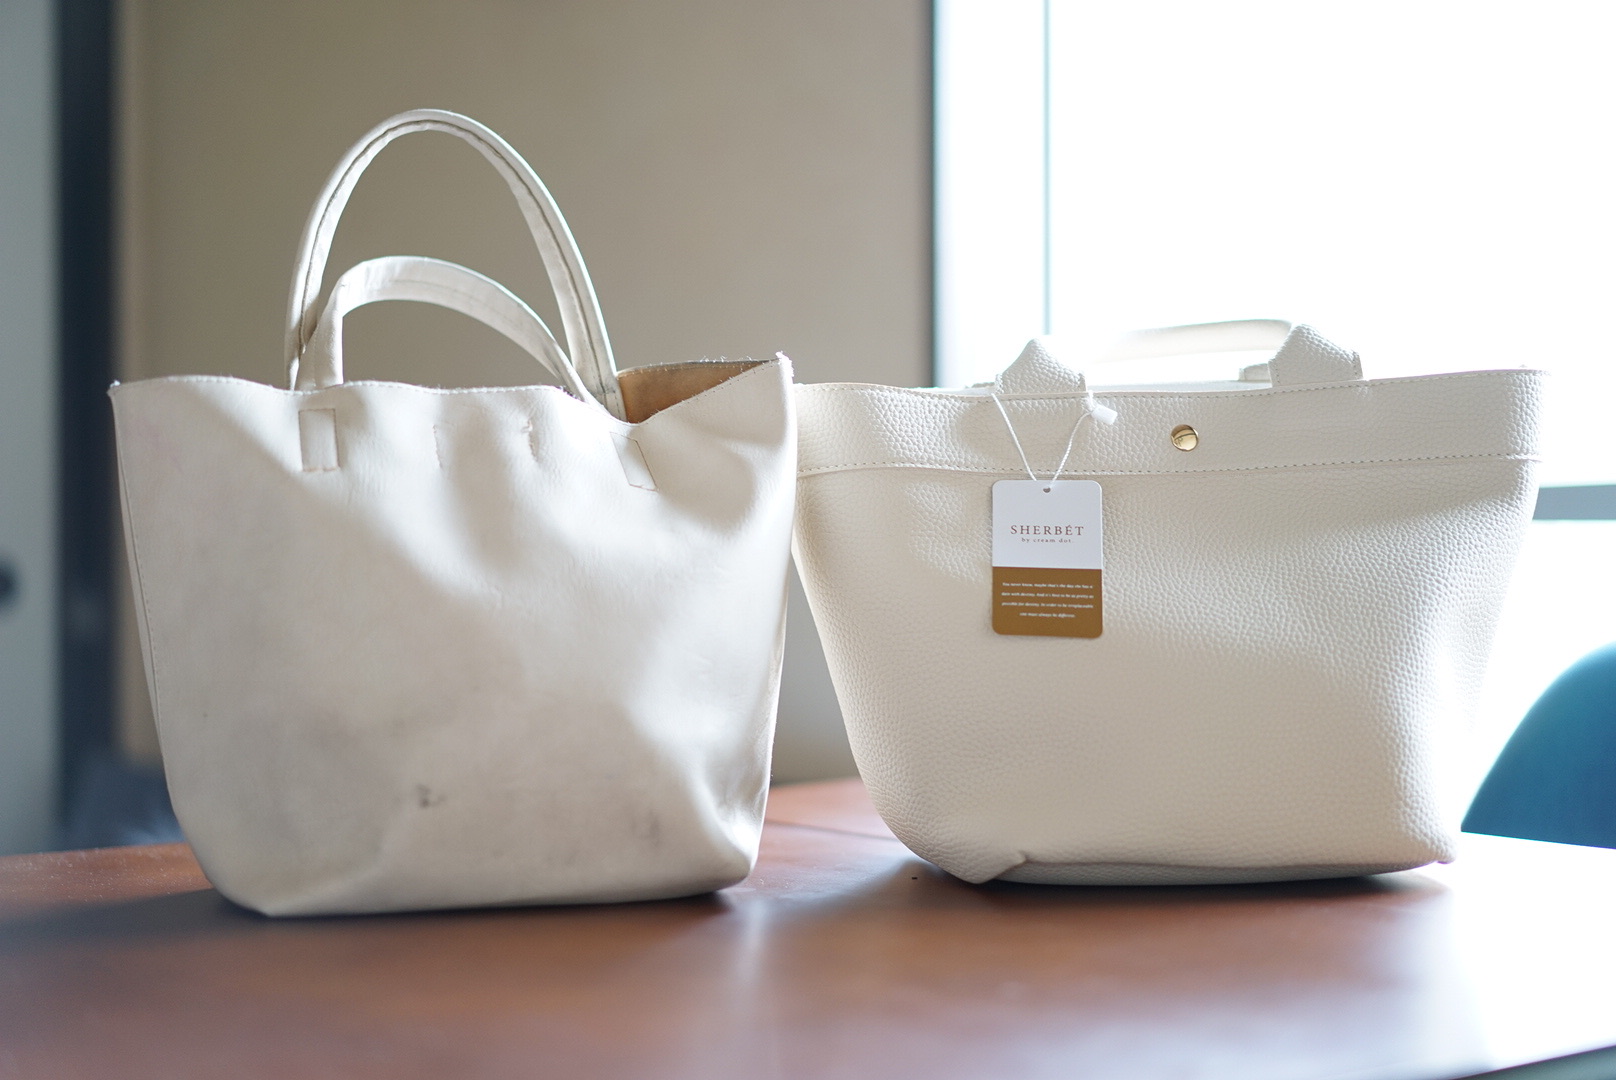 白の本革風トートバッグがやっぱり大好き ２つのプチプラバッグを比較レビュー 写真で魅力発掘 暮らしのフォトダイアリー Powered By ライブドアブログ